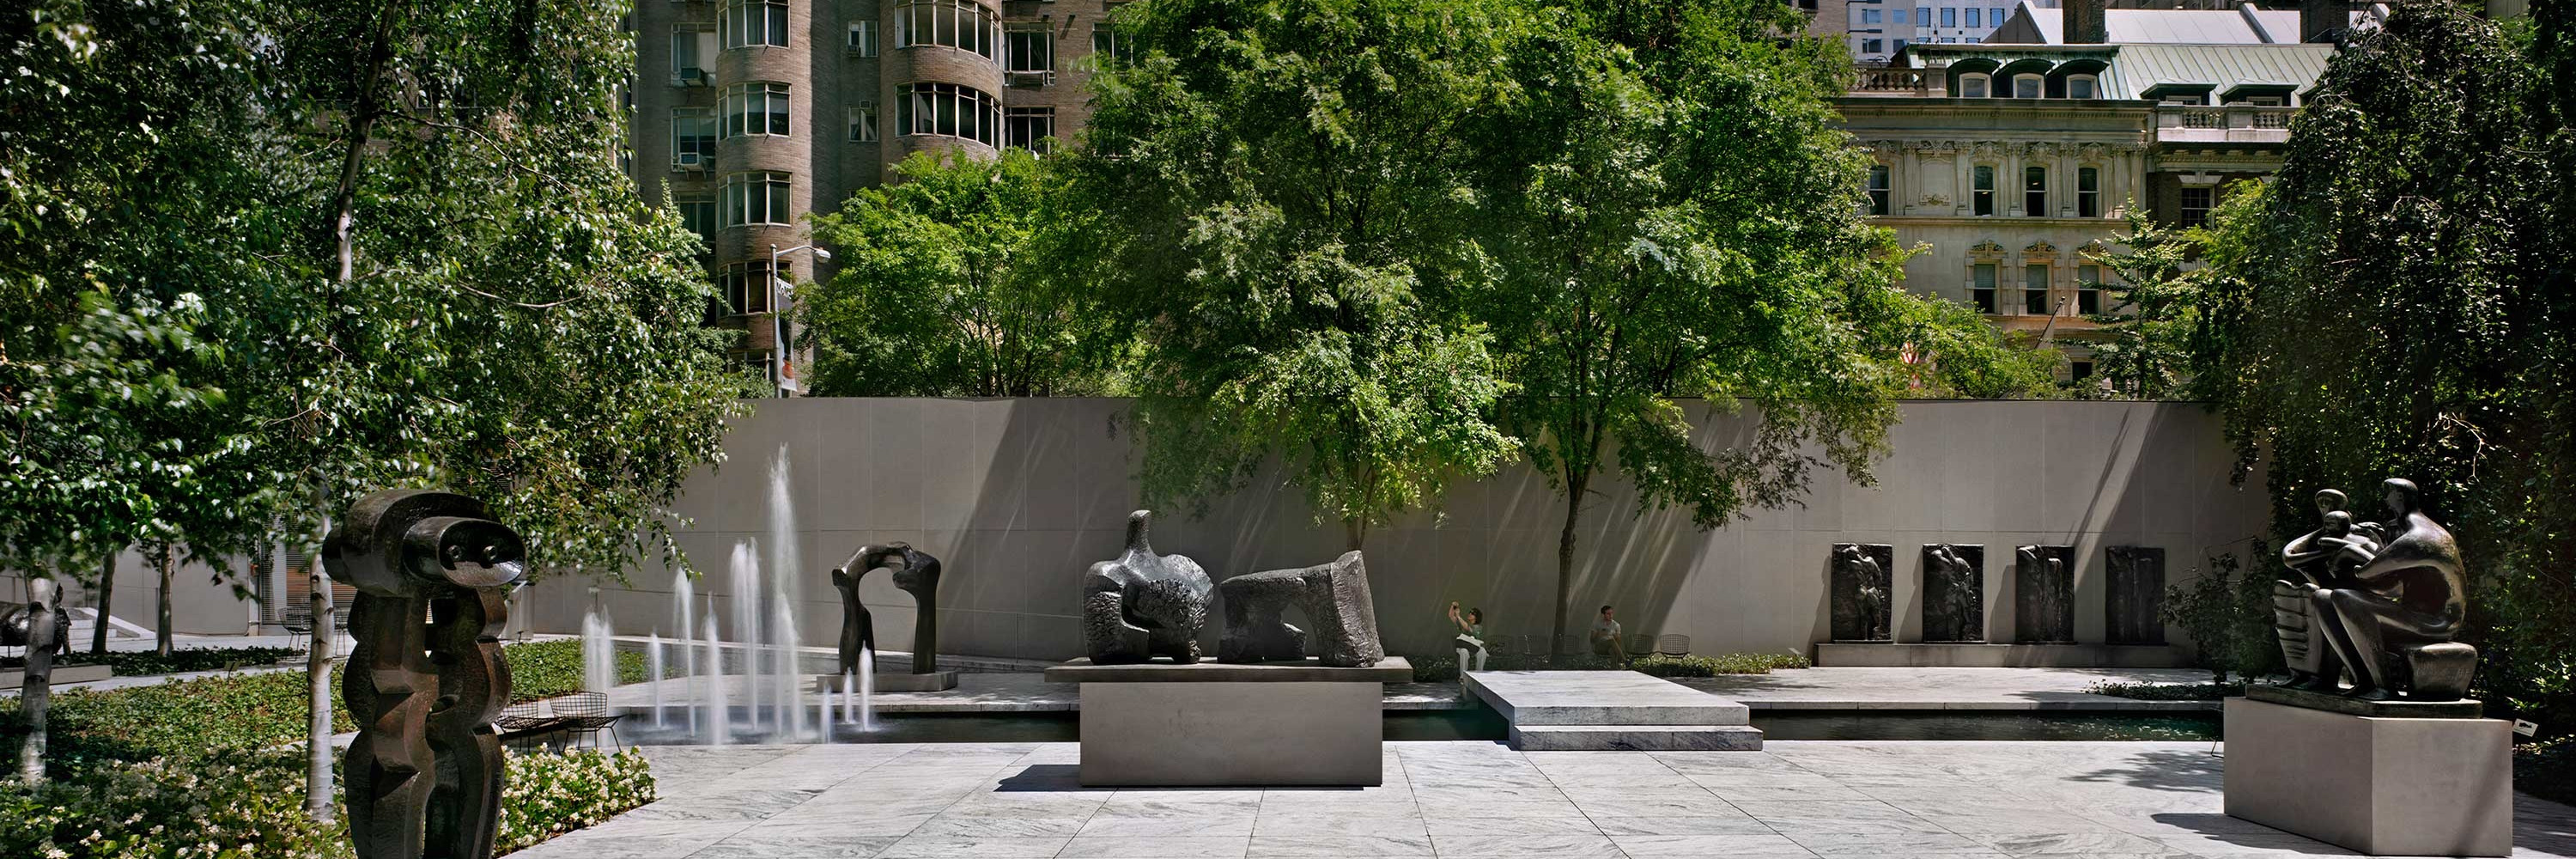 Virtual Views Sculpture Garden MoMA